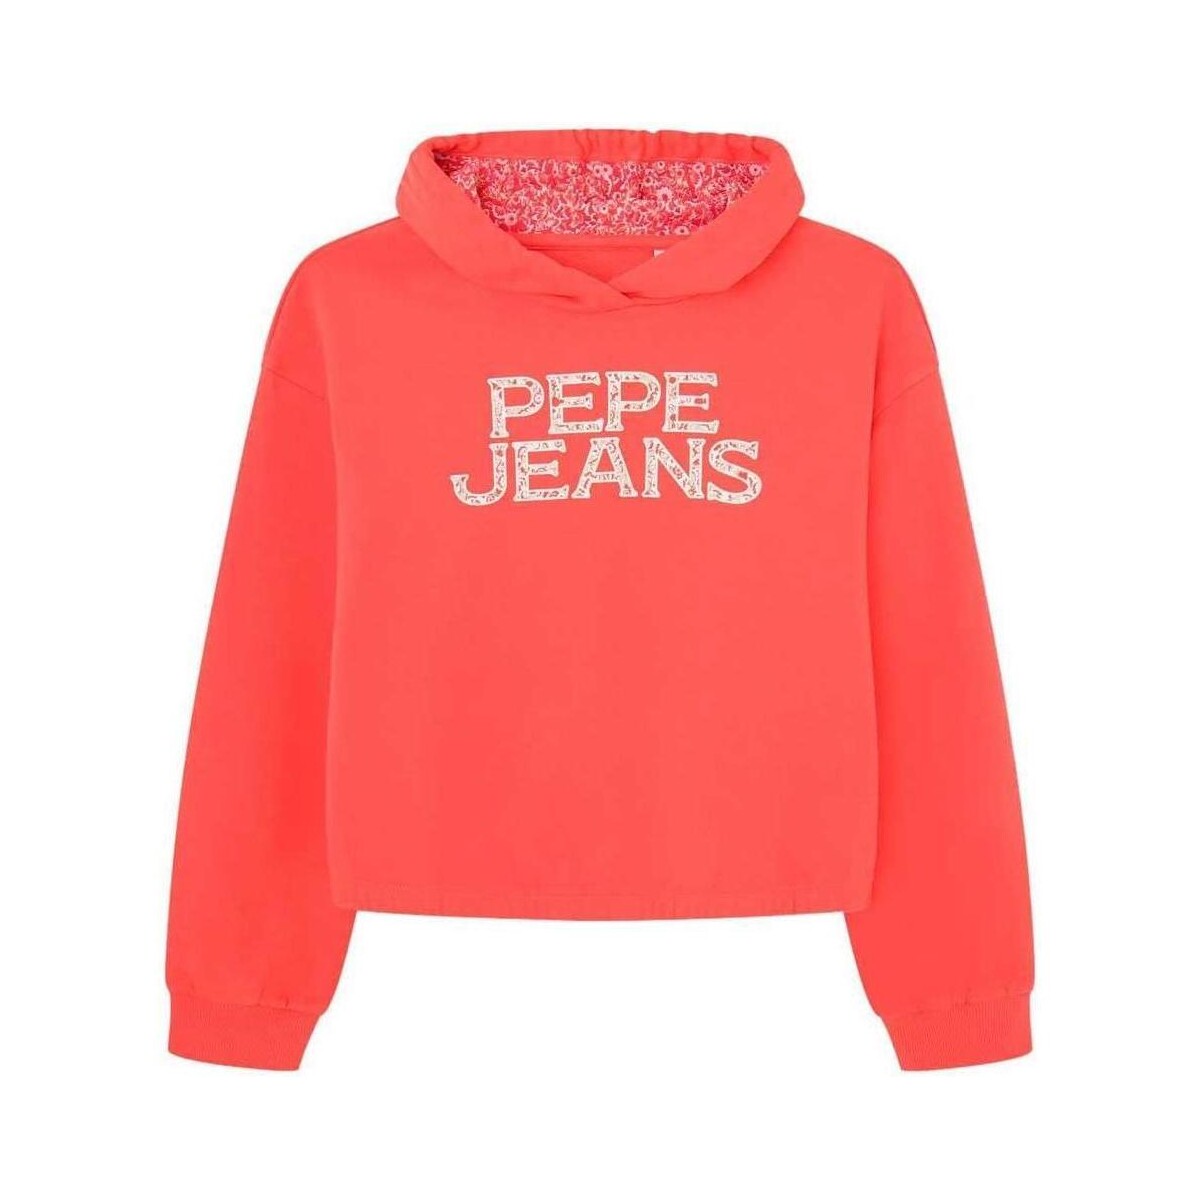 Textiel Meisjes Sweaters / Sweatshirts Pepe jeans  Rood